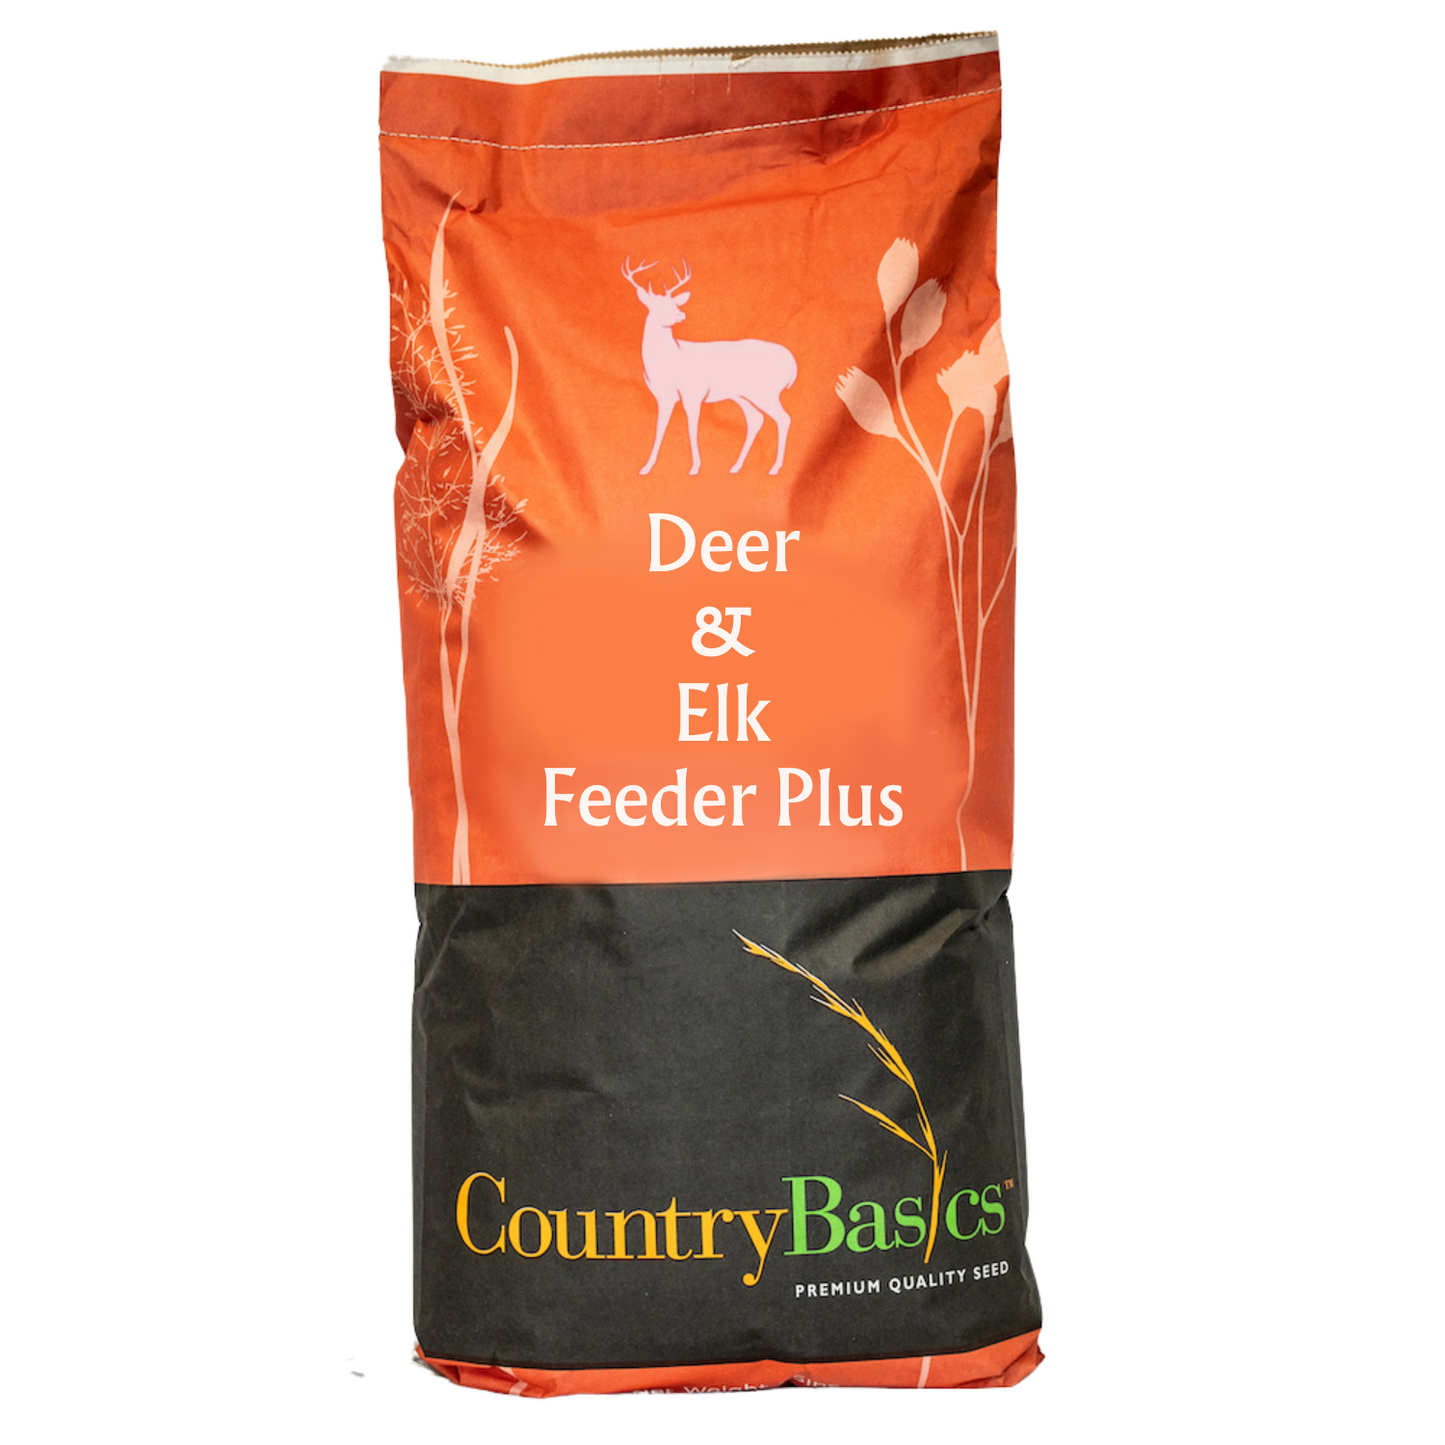 Deer & Elk Feeder Plus